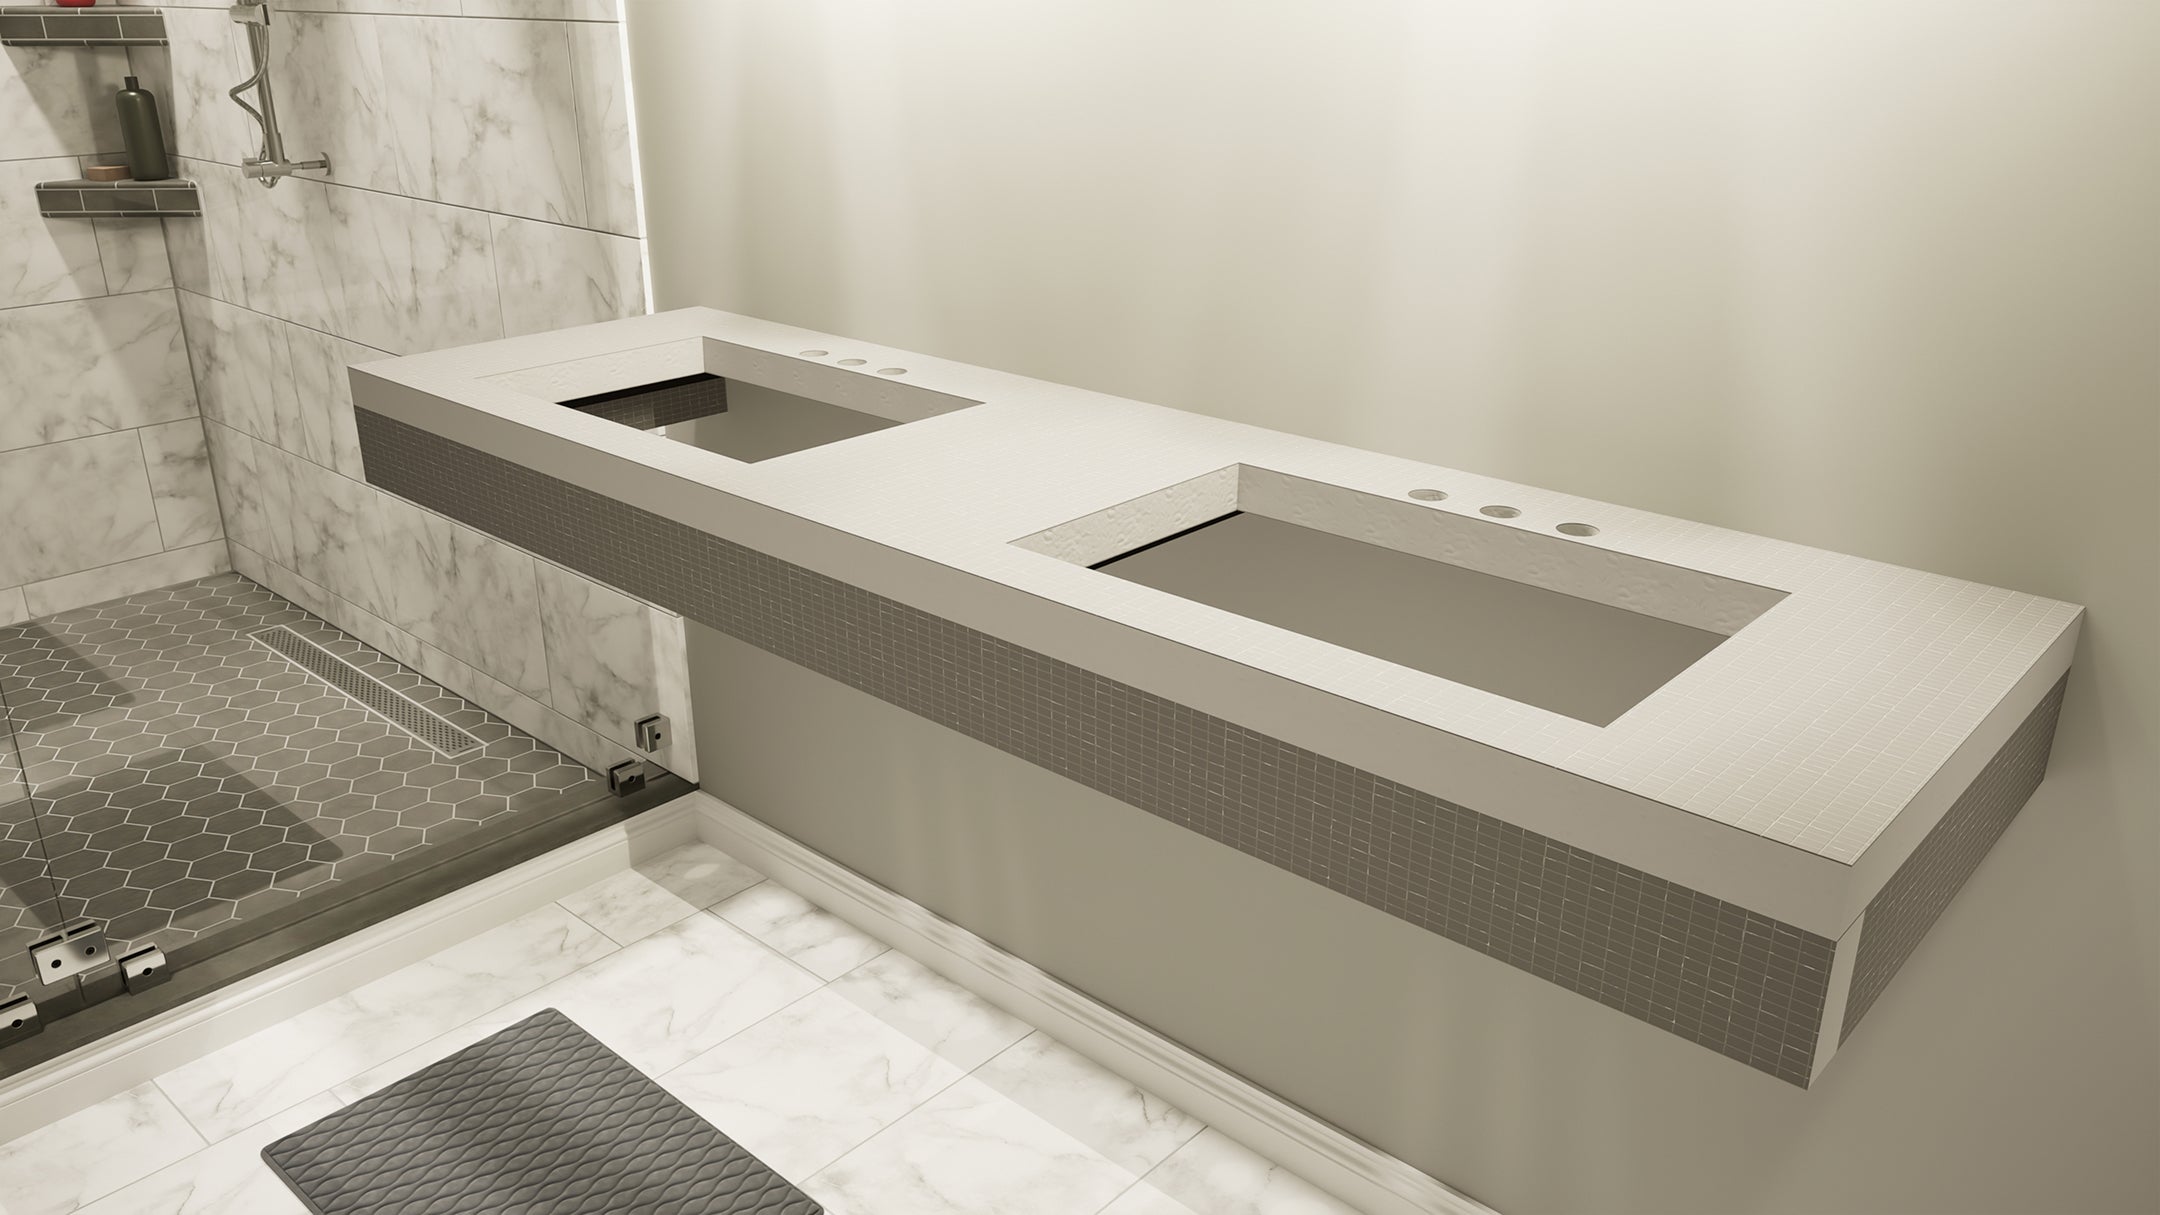 *New* The Original Free Floating Bathroom Vanity Kit® with Dural Tilux Board® - Original Vanity Bracket®